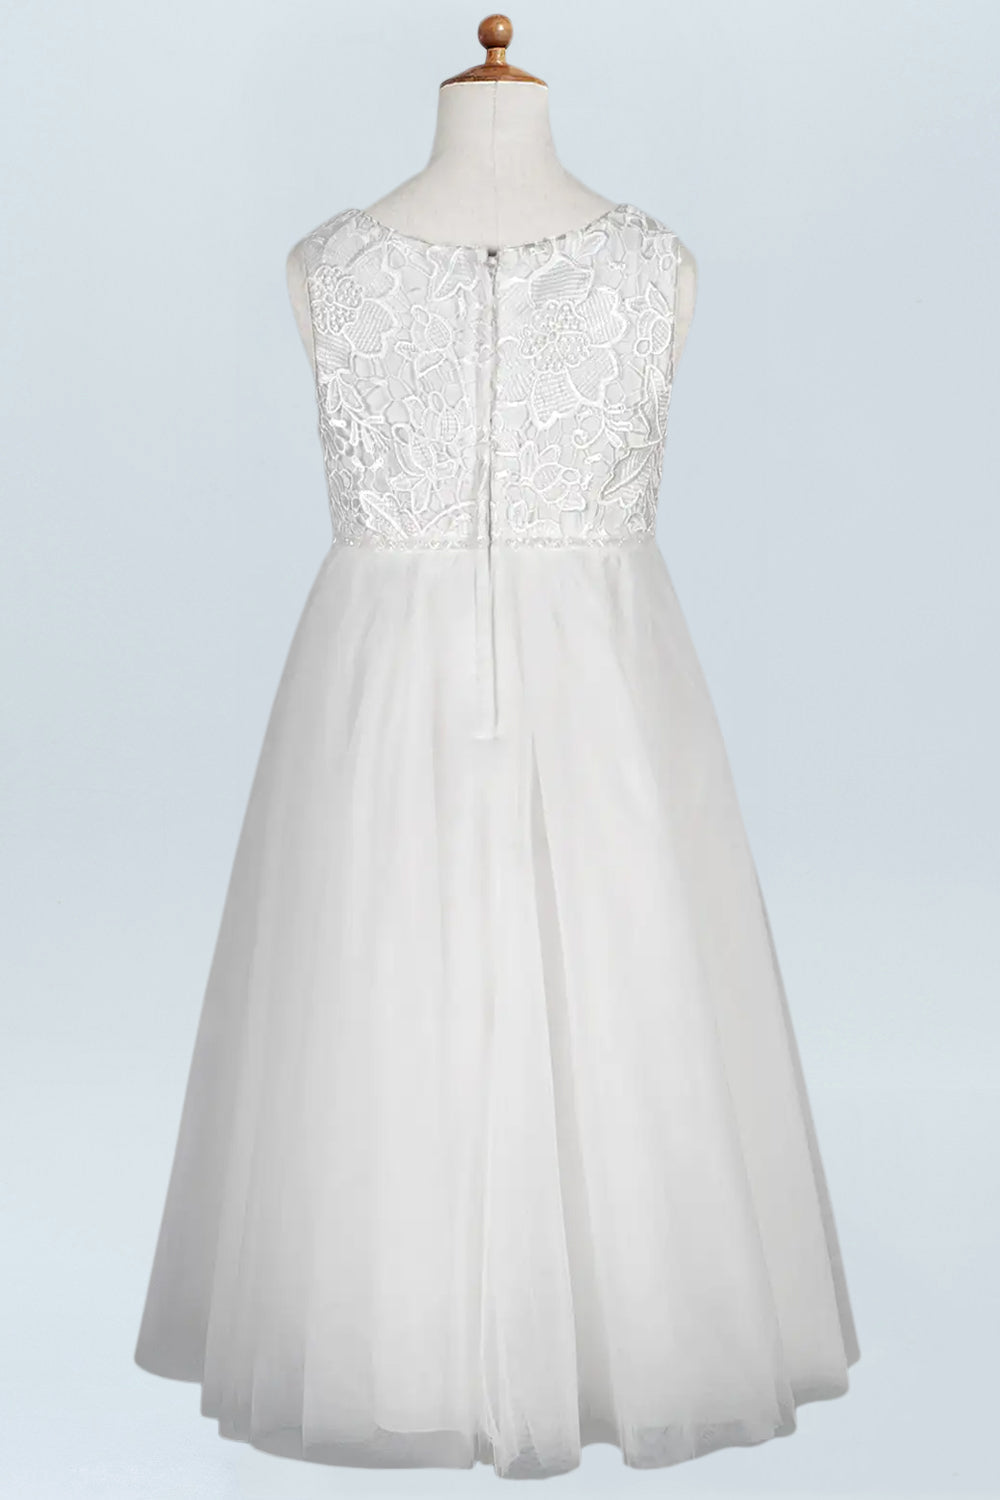 Lace A-Line Scoop Neck Half Sleeves Floweer Girl Dress-M500124